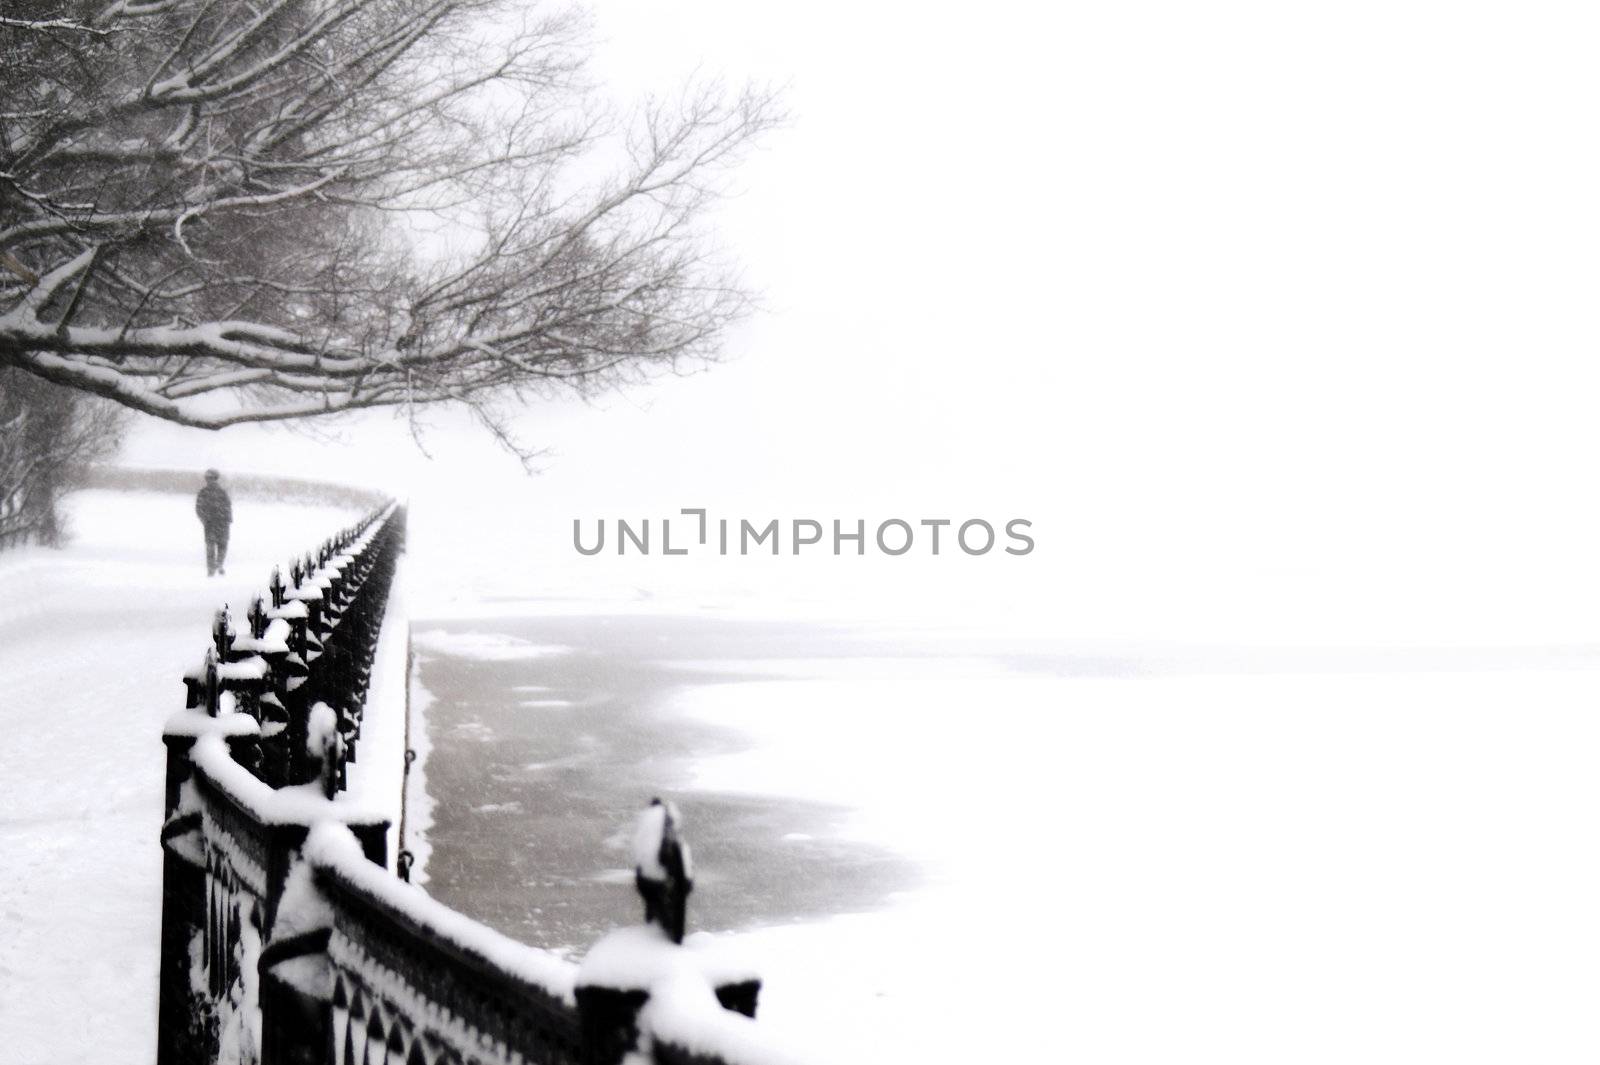 embankment at snowfall by simfan